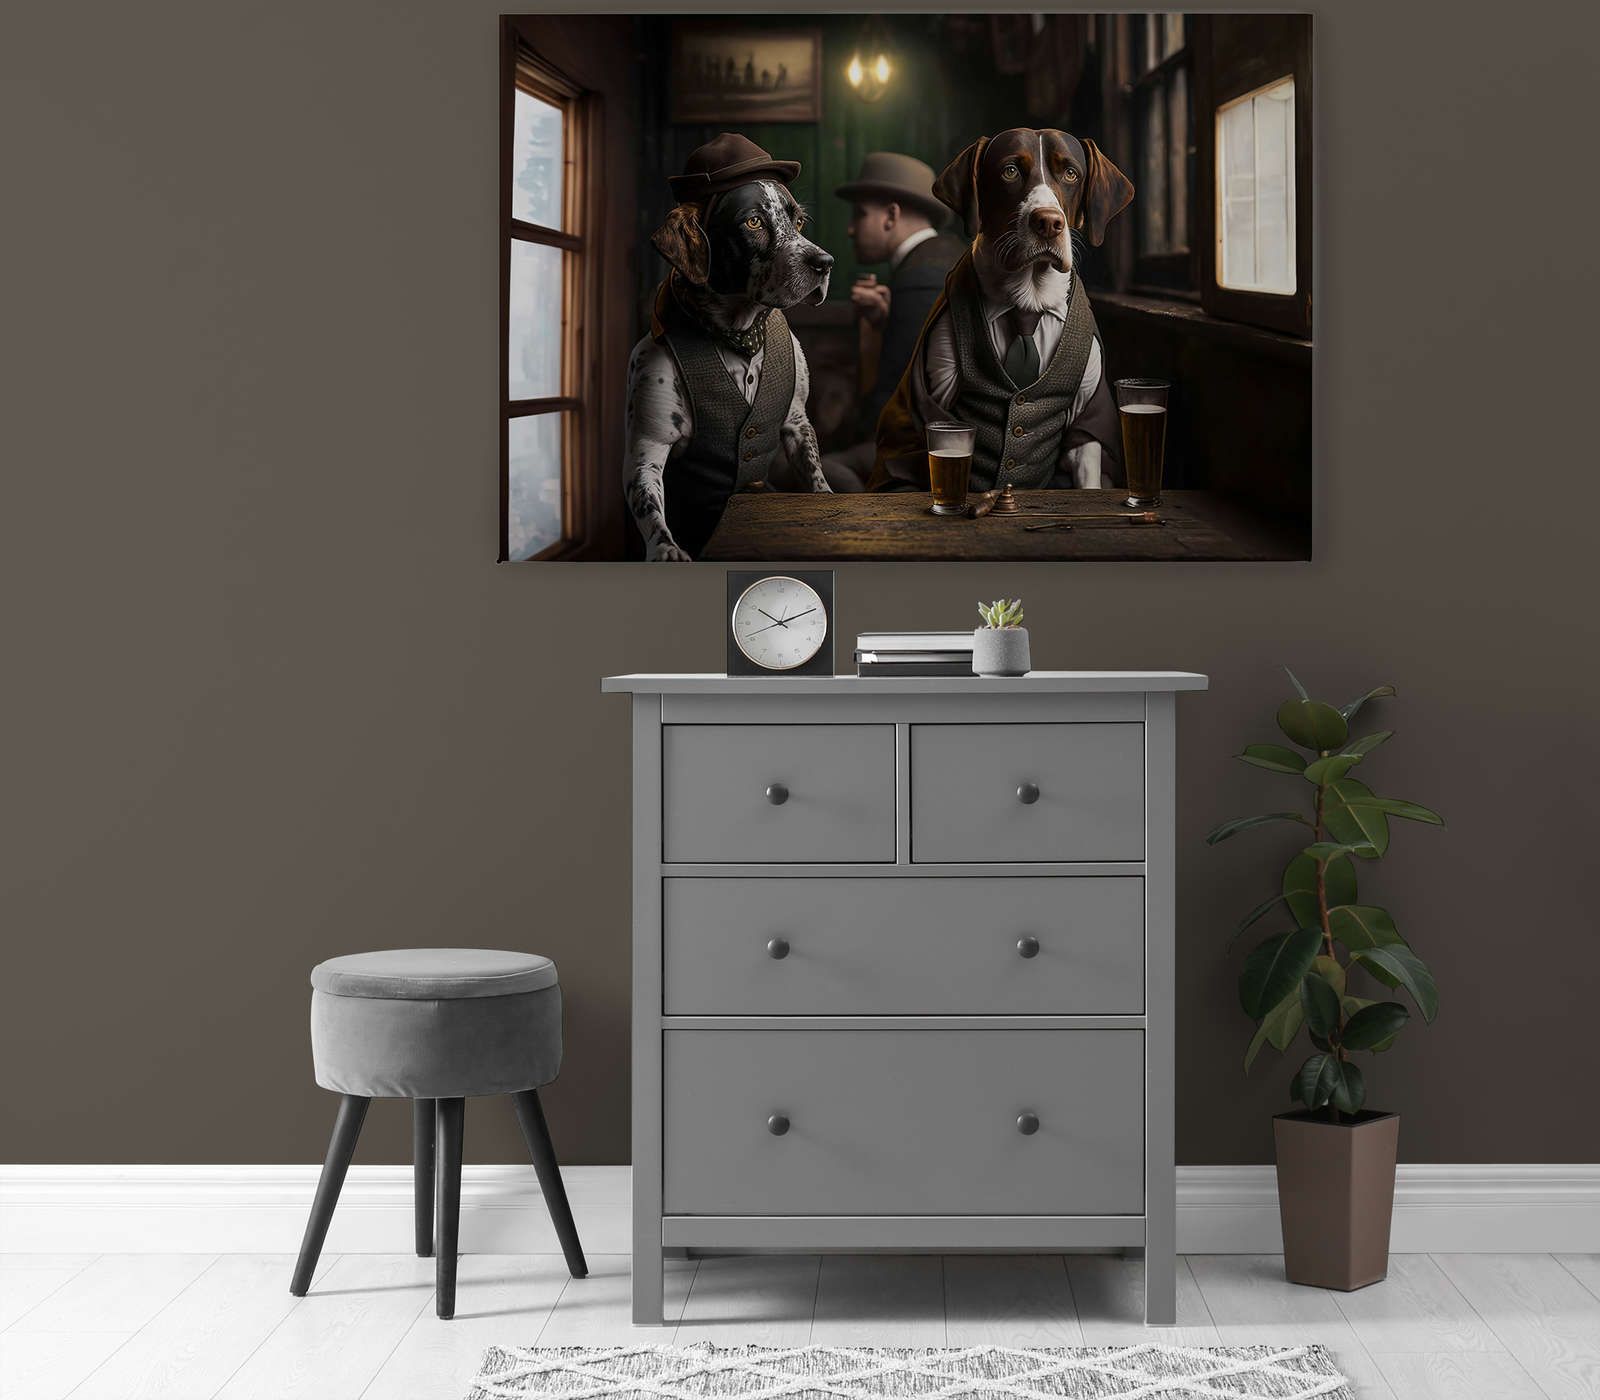             KI-Leinwandbild »Doggy Bar« – 120 cm x 80 cm
        